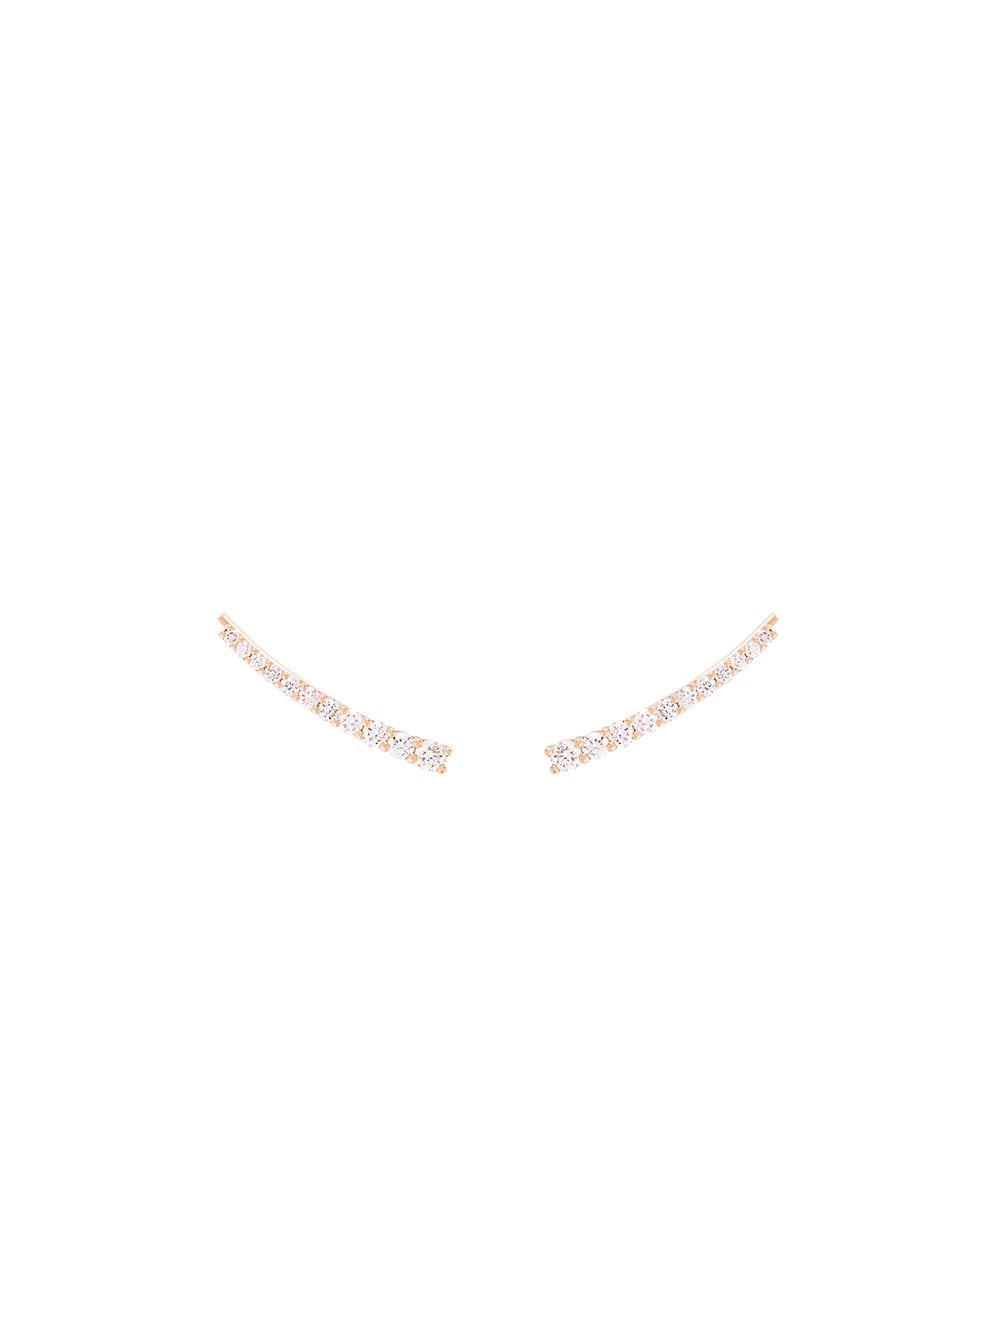 ALINKA 18kt gold DASHA SUPER FINE diamond cuff earrings - Metallic von ALINKA